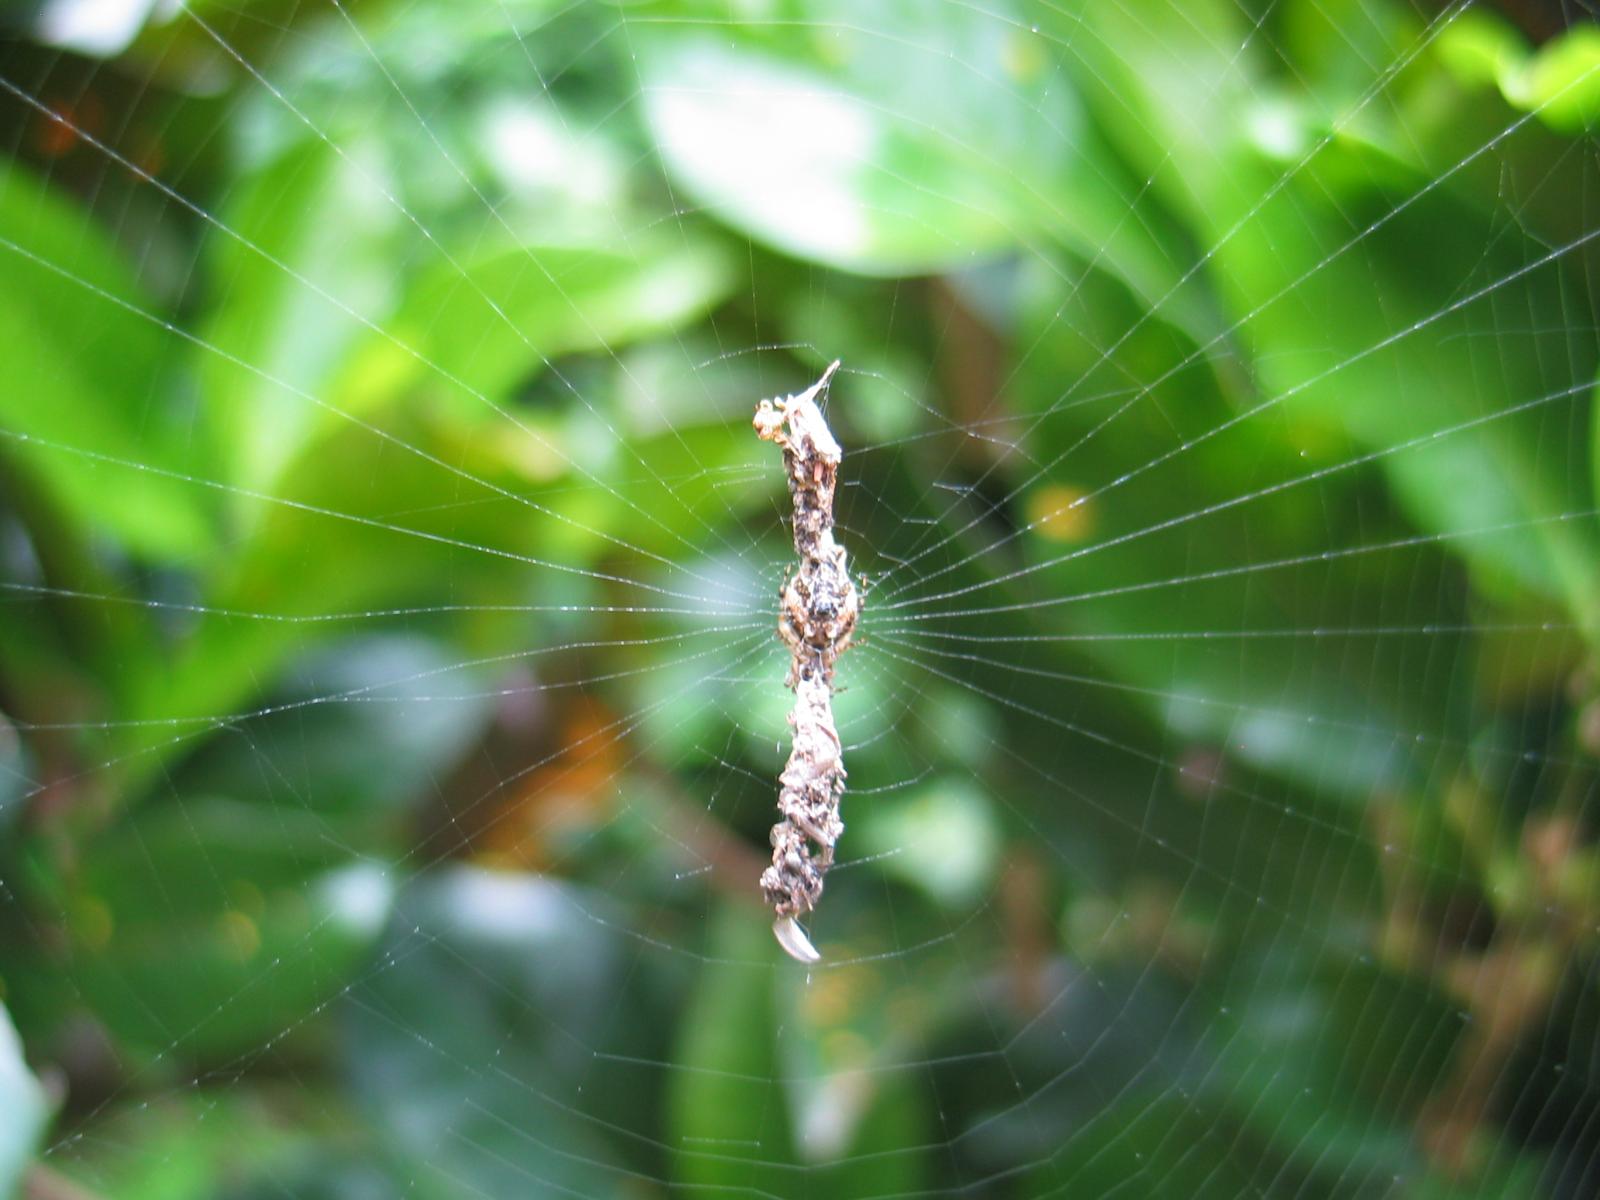 A spiderweb